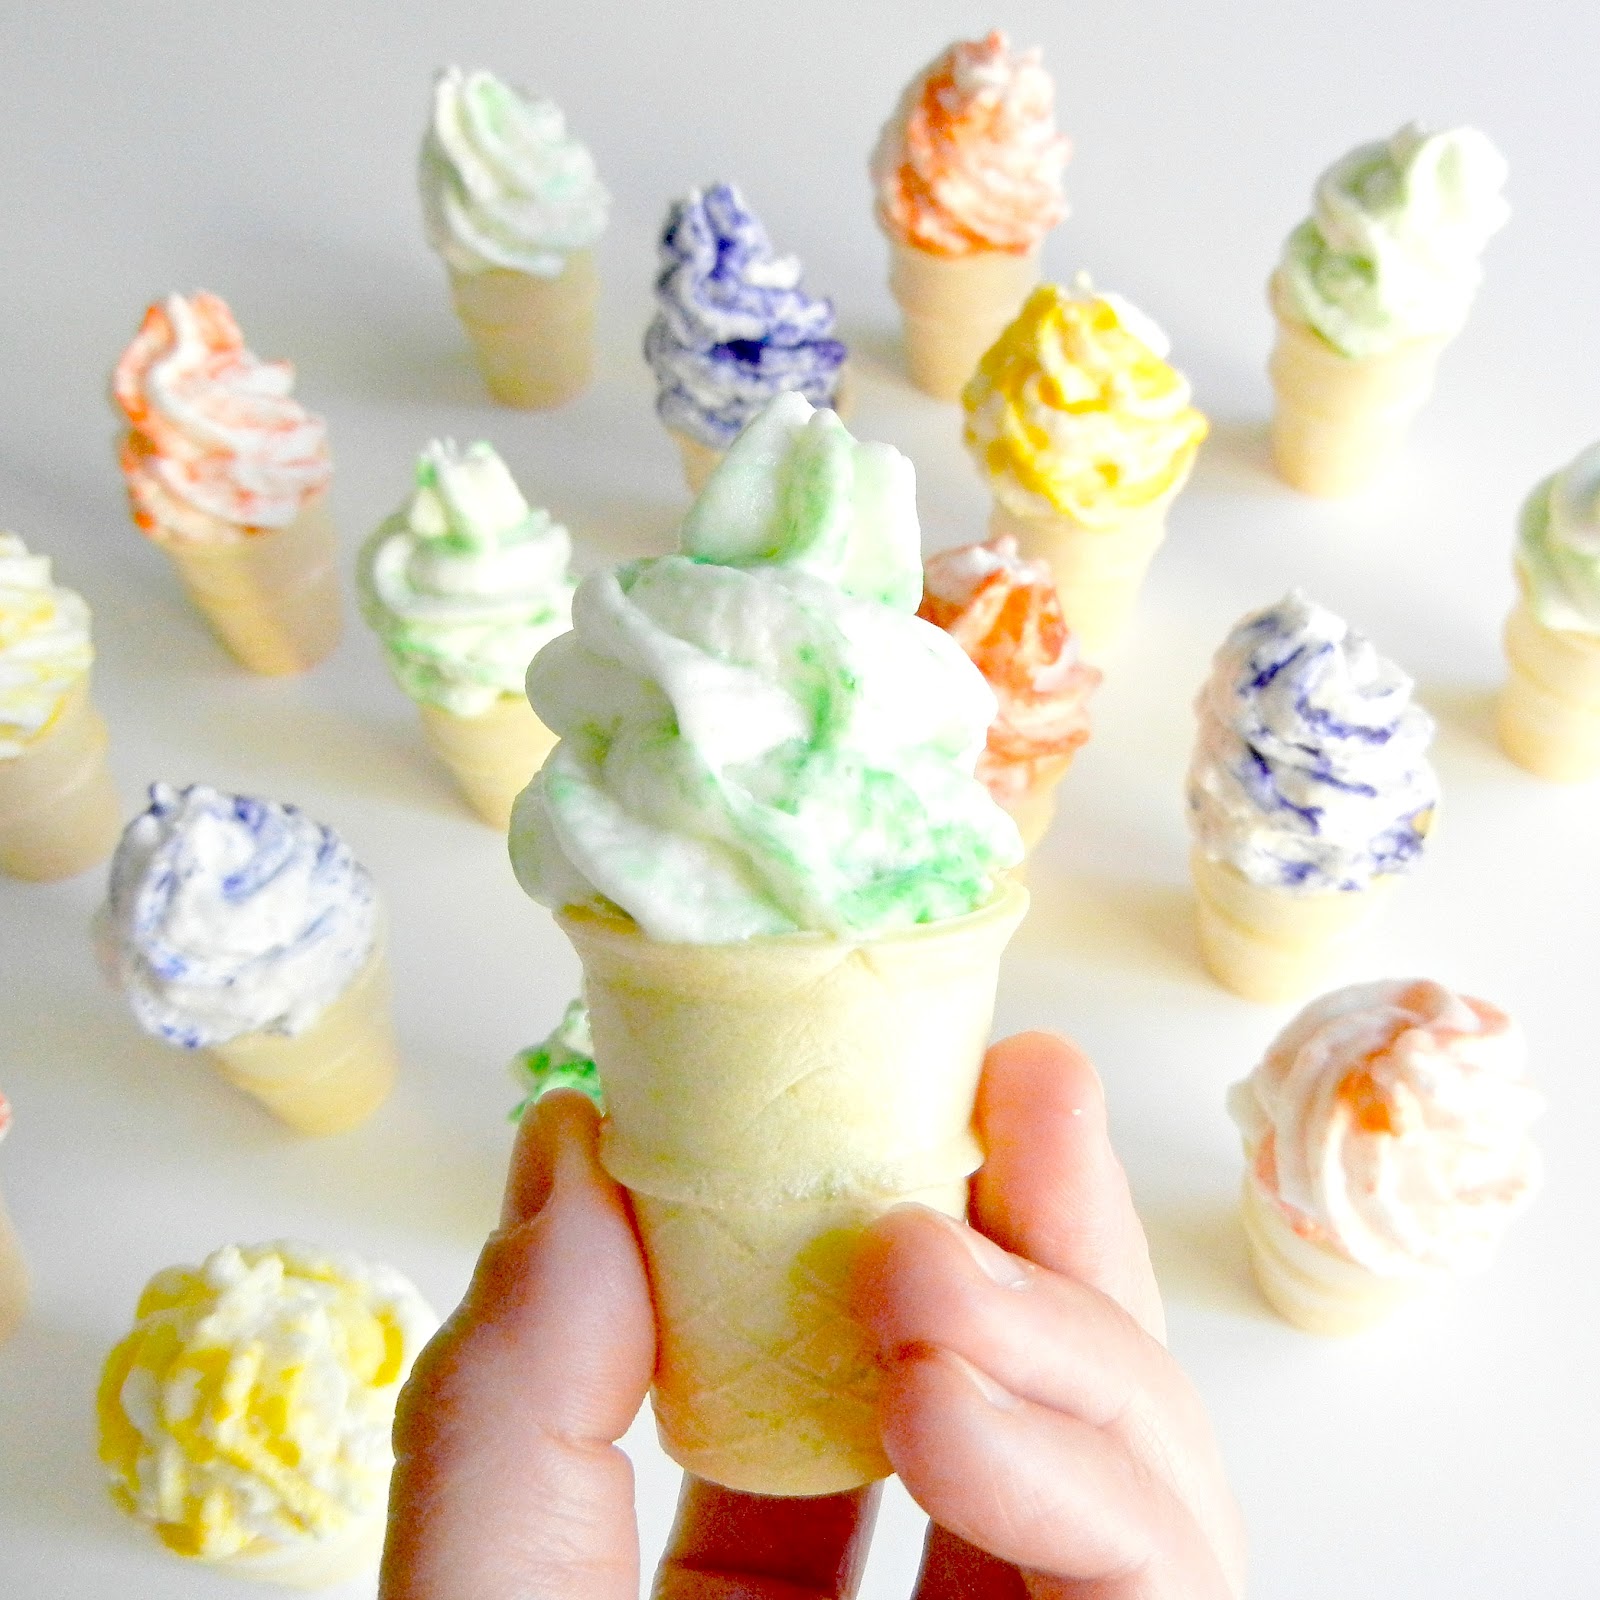 Are These Ice Cream Cone Wallpaper PicsWallpapercom